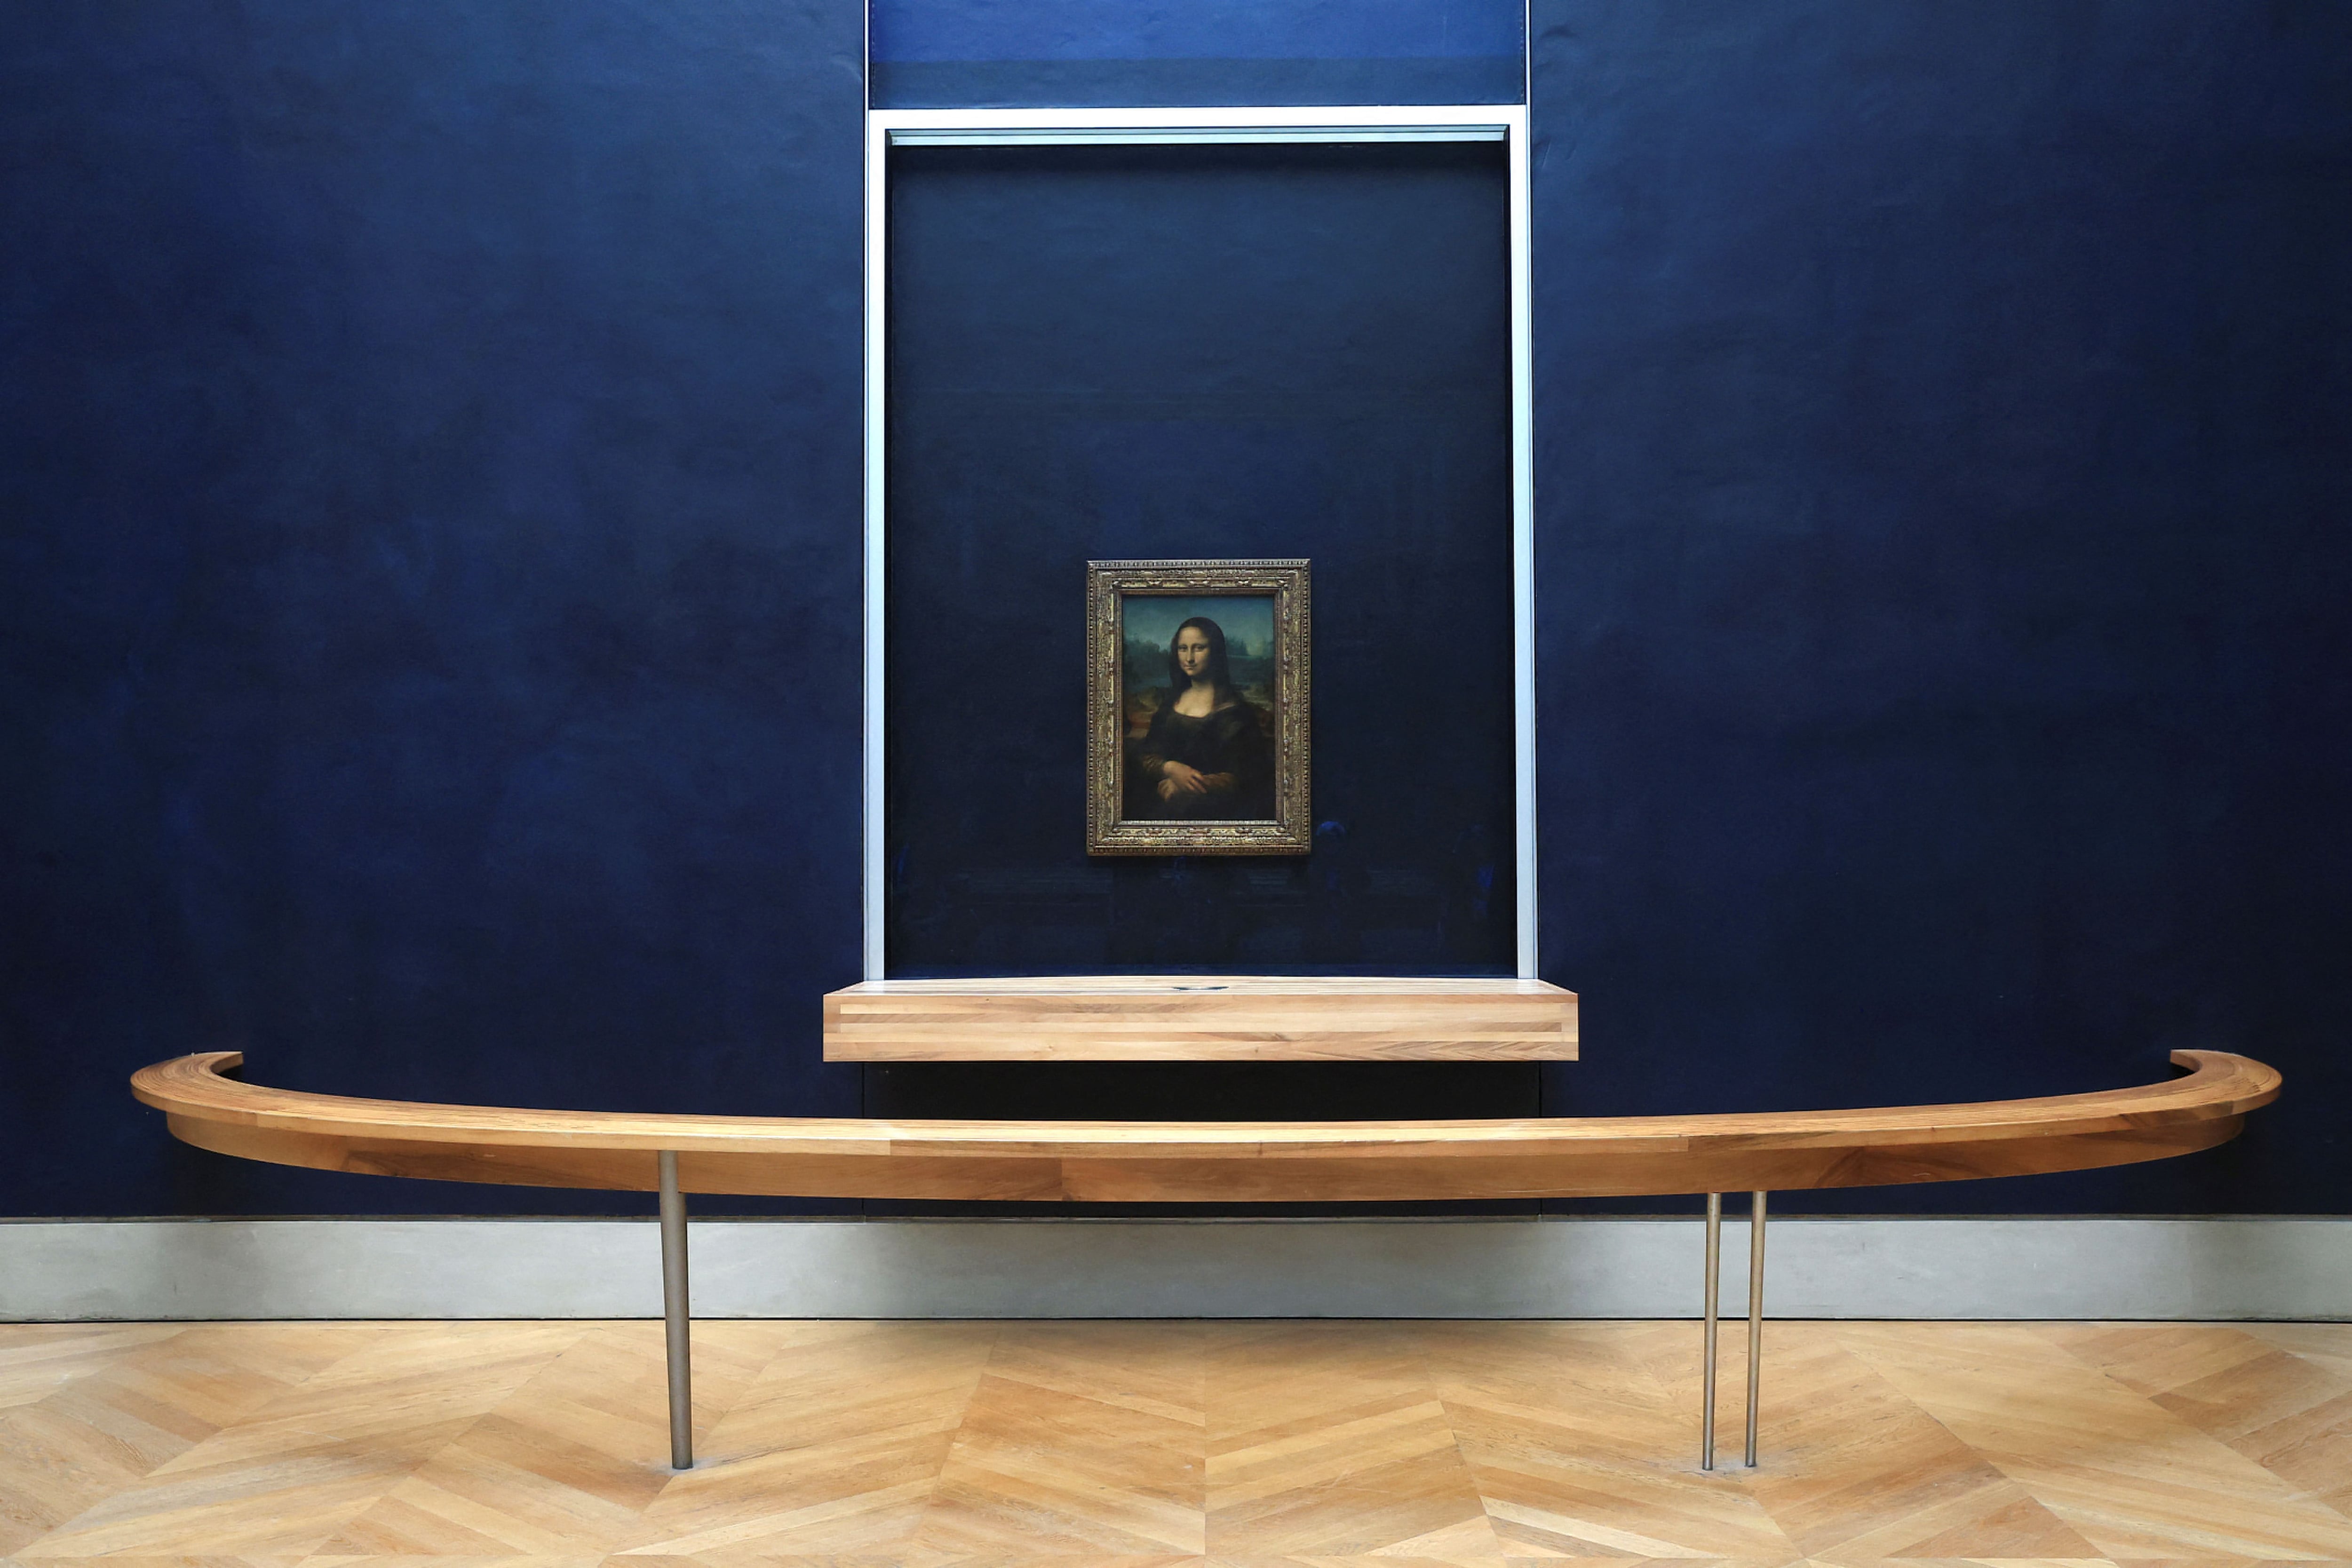 La Mona Lisaen el museo del Louvre.   Aurelien Morissard/Pool via REUTERS